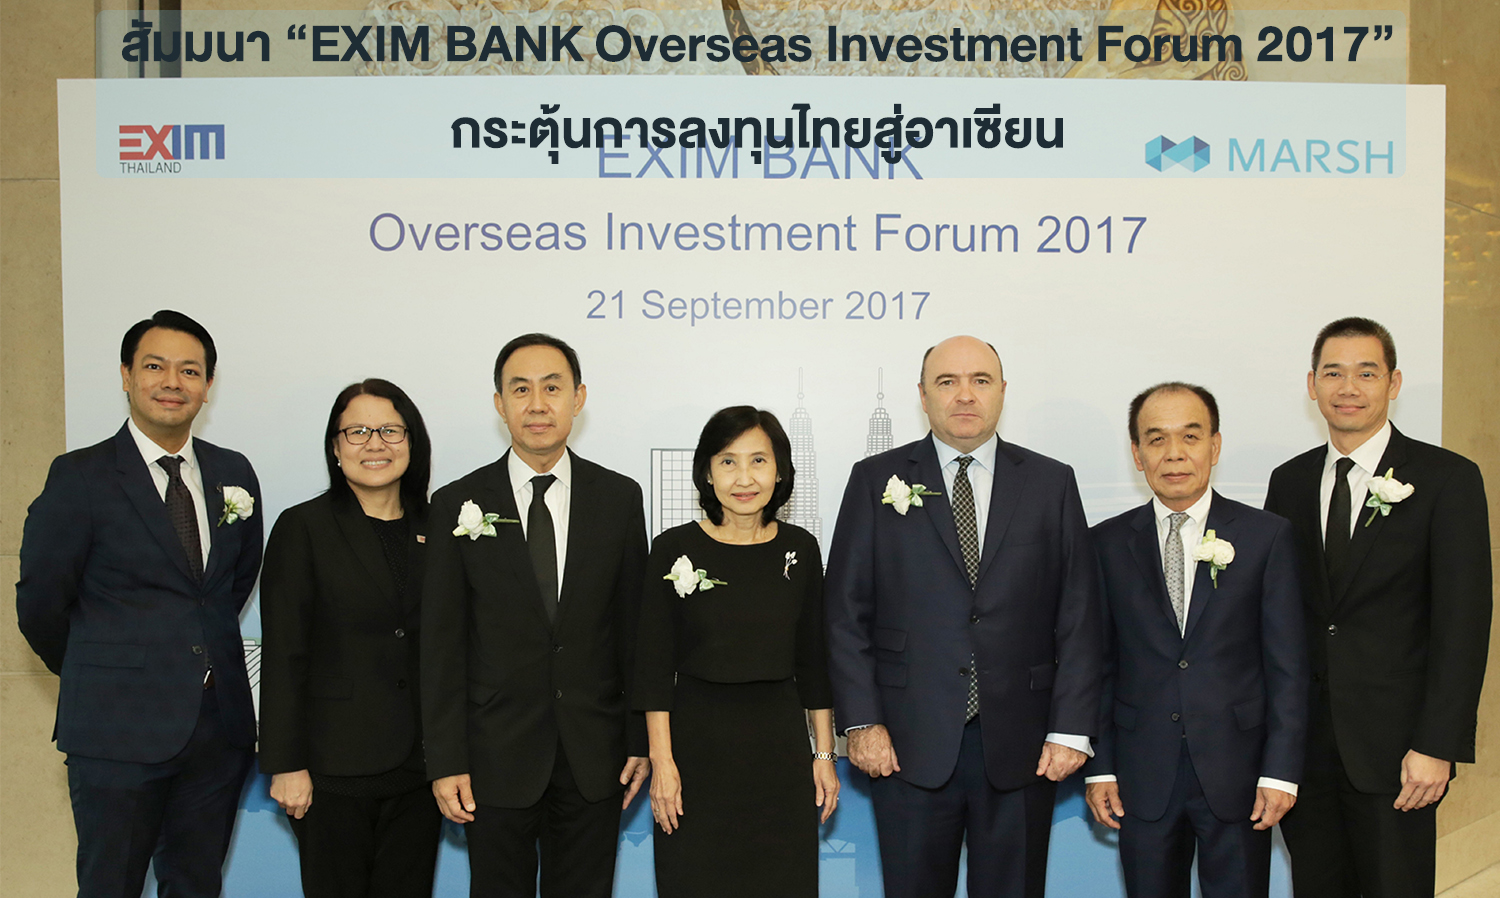 สัมมนา “EXIM BANK Overseas Investment Forum 2017” กระตุ้นการลงทุนไทยสู่อาเซียน